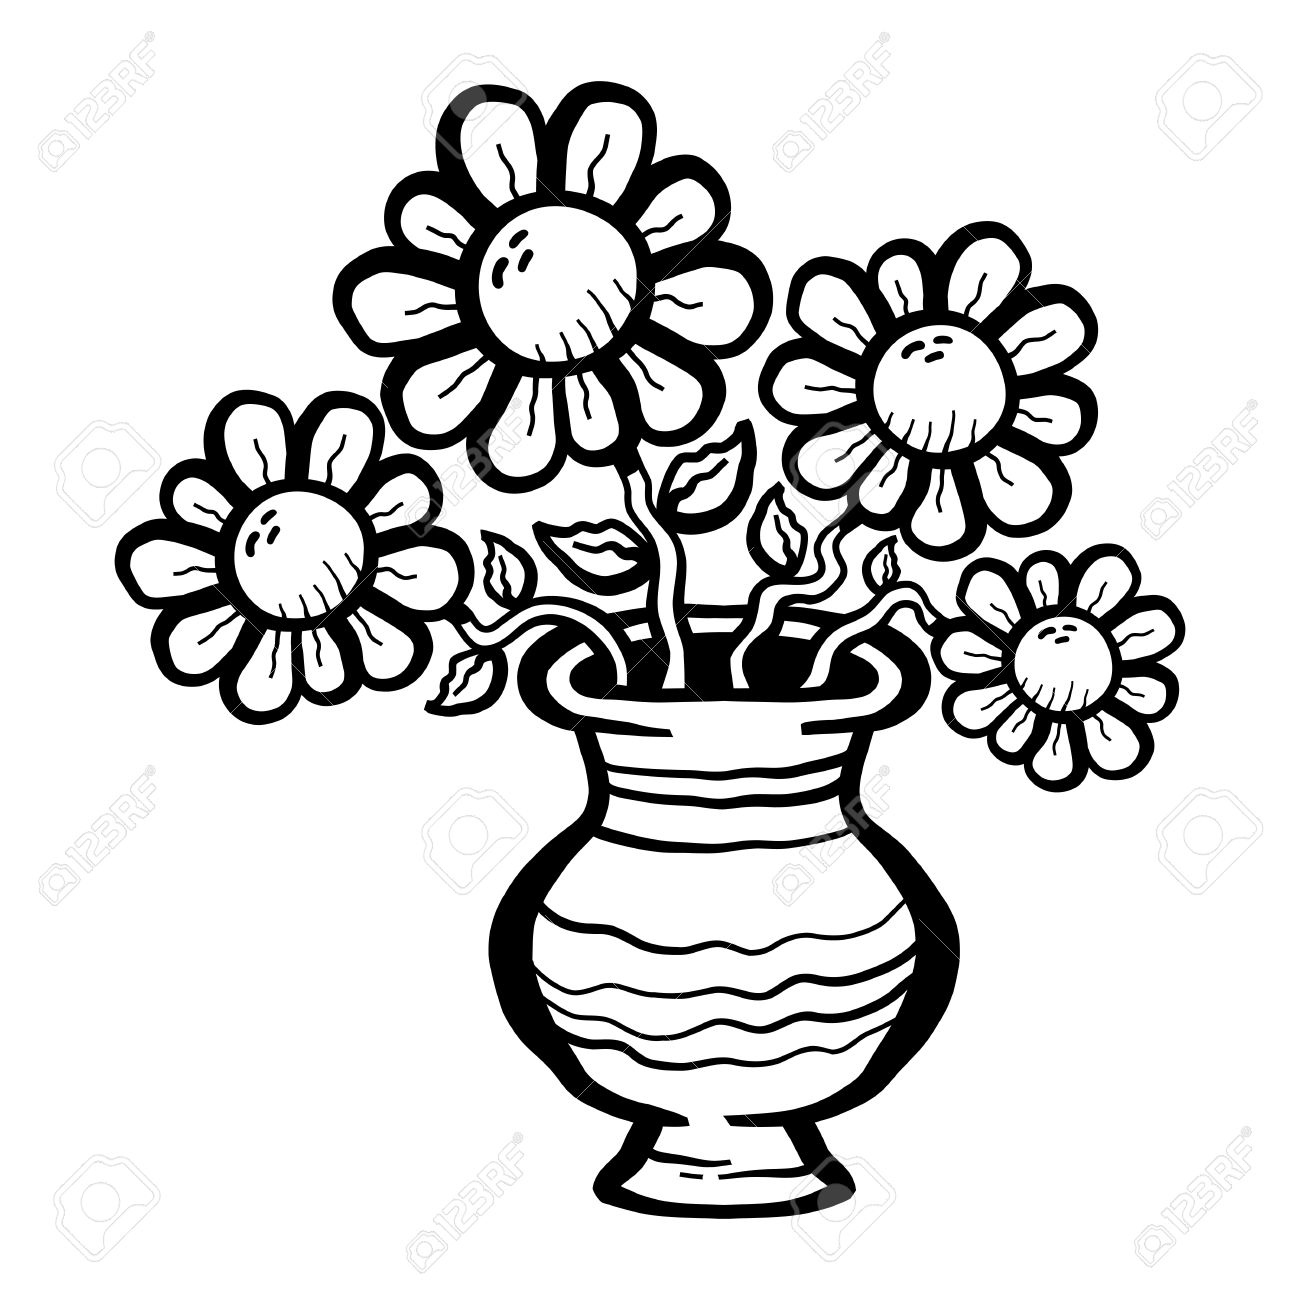 Flower vase clipart black and white Fresh Flower Vase.